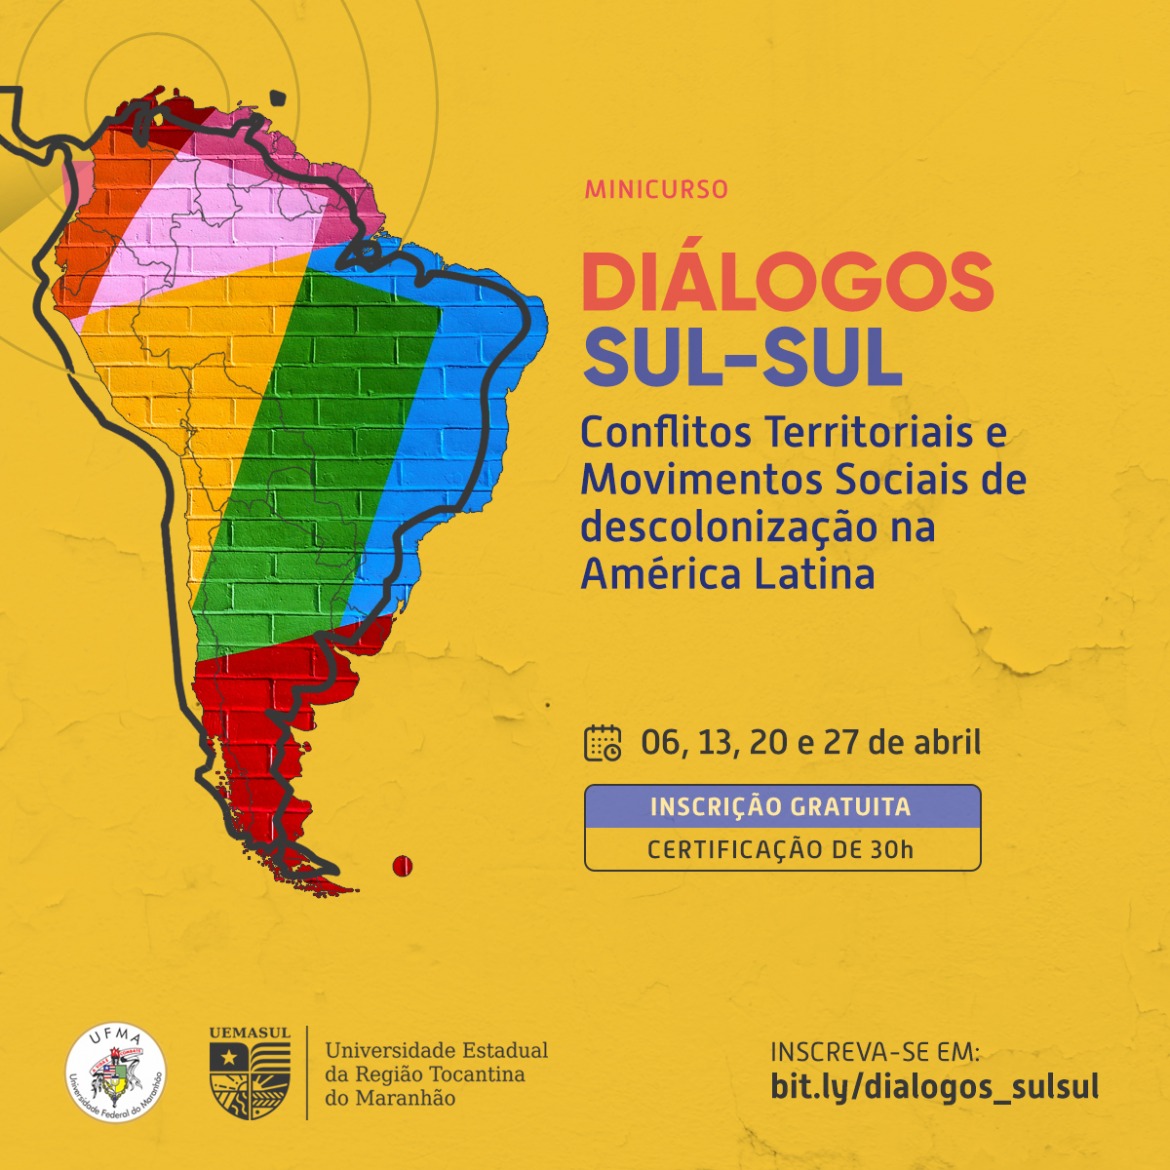 UEMASUL - Diálogos Sul-Sul: Conflitos Territoriais e Movimentos Sociais